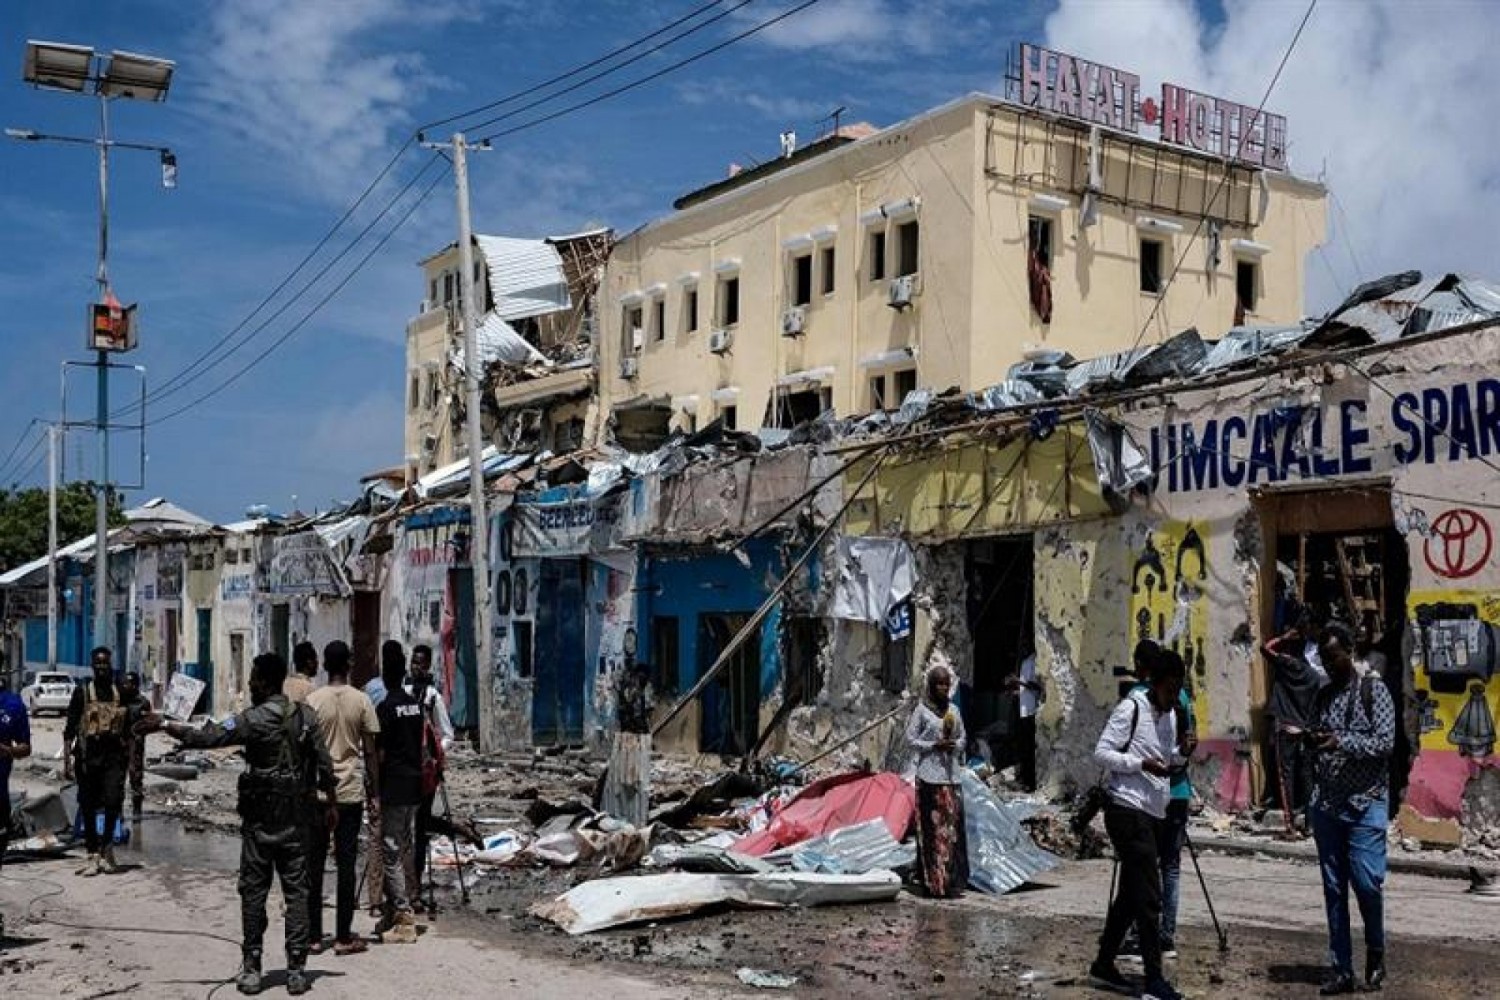 Somalie : Attaque islamiste contre un hôtel de Kismayo, neuf morts et 47 blessés